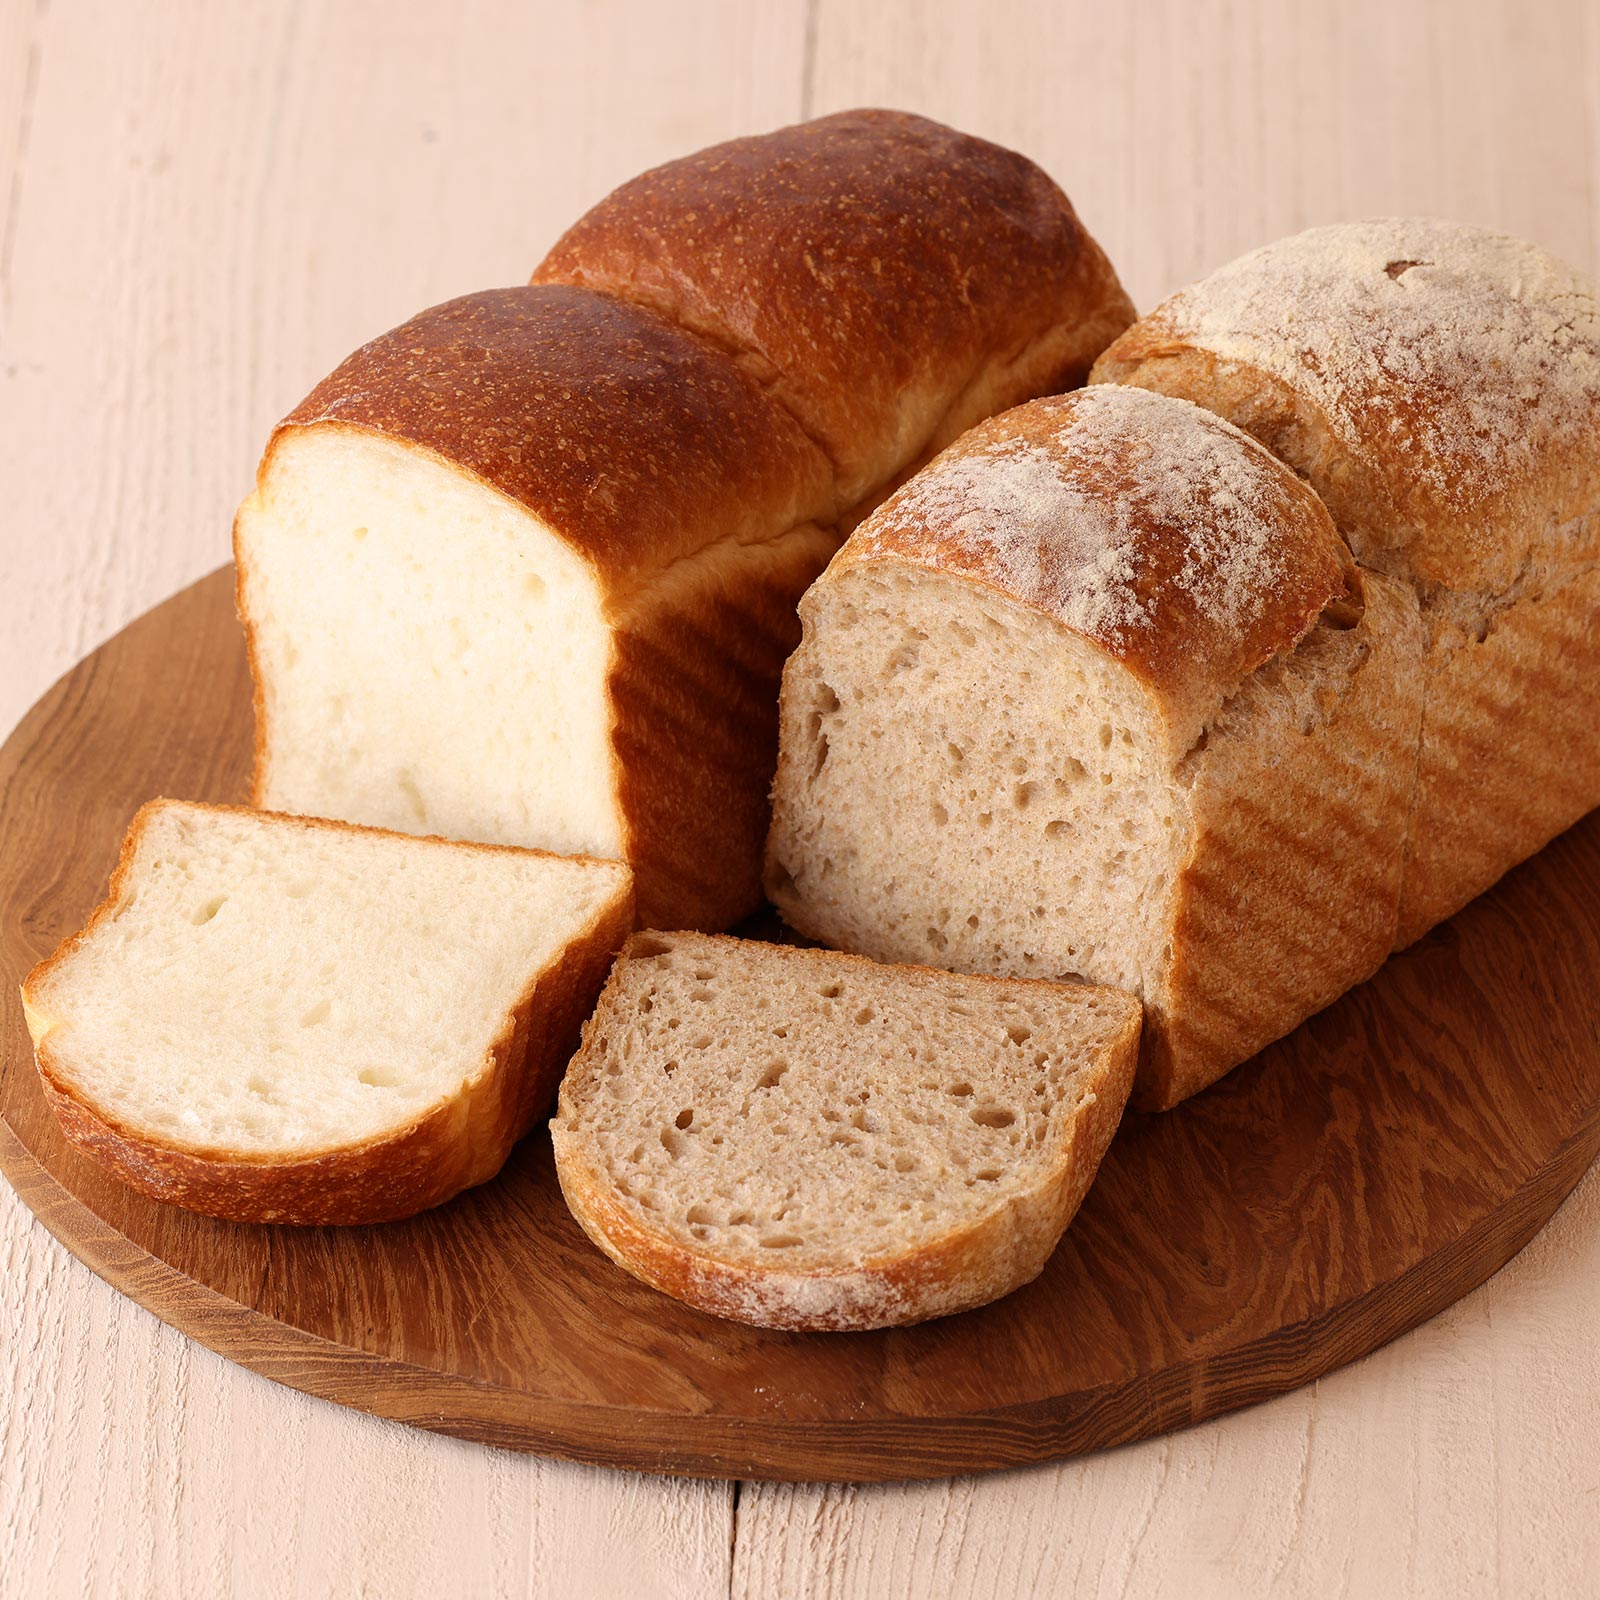 ほんのり甘さ感じるプレーン食パンと小麦本来の旨みが活きた全粒粉食パン